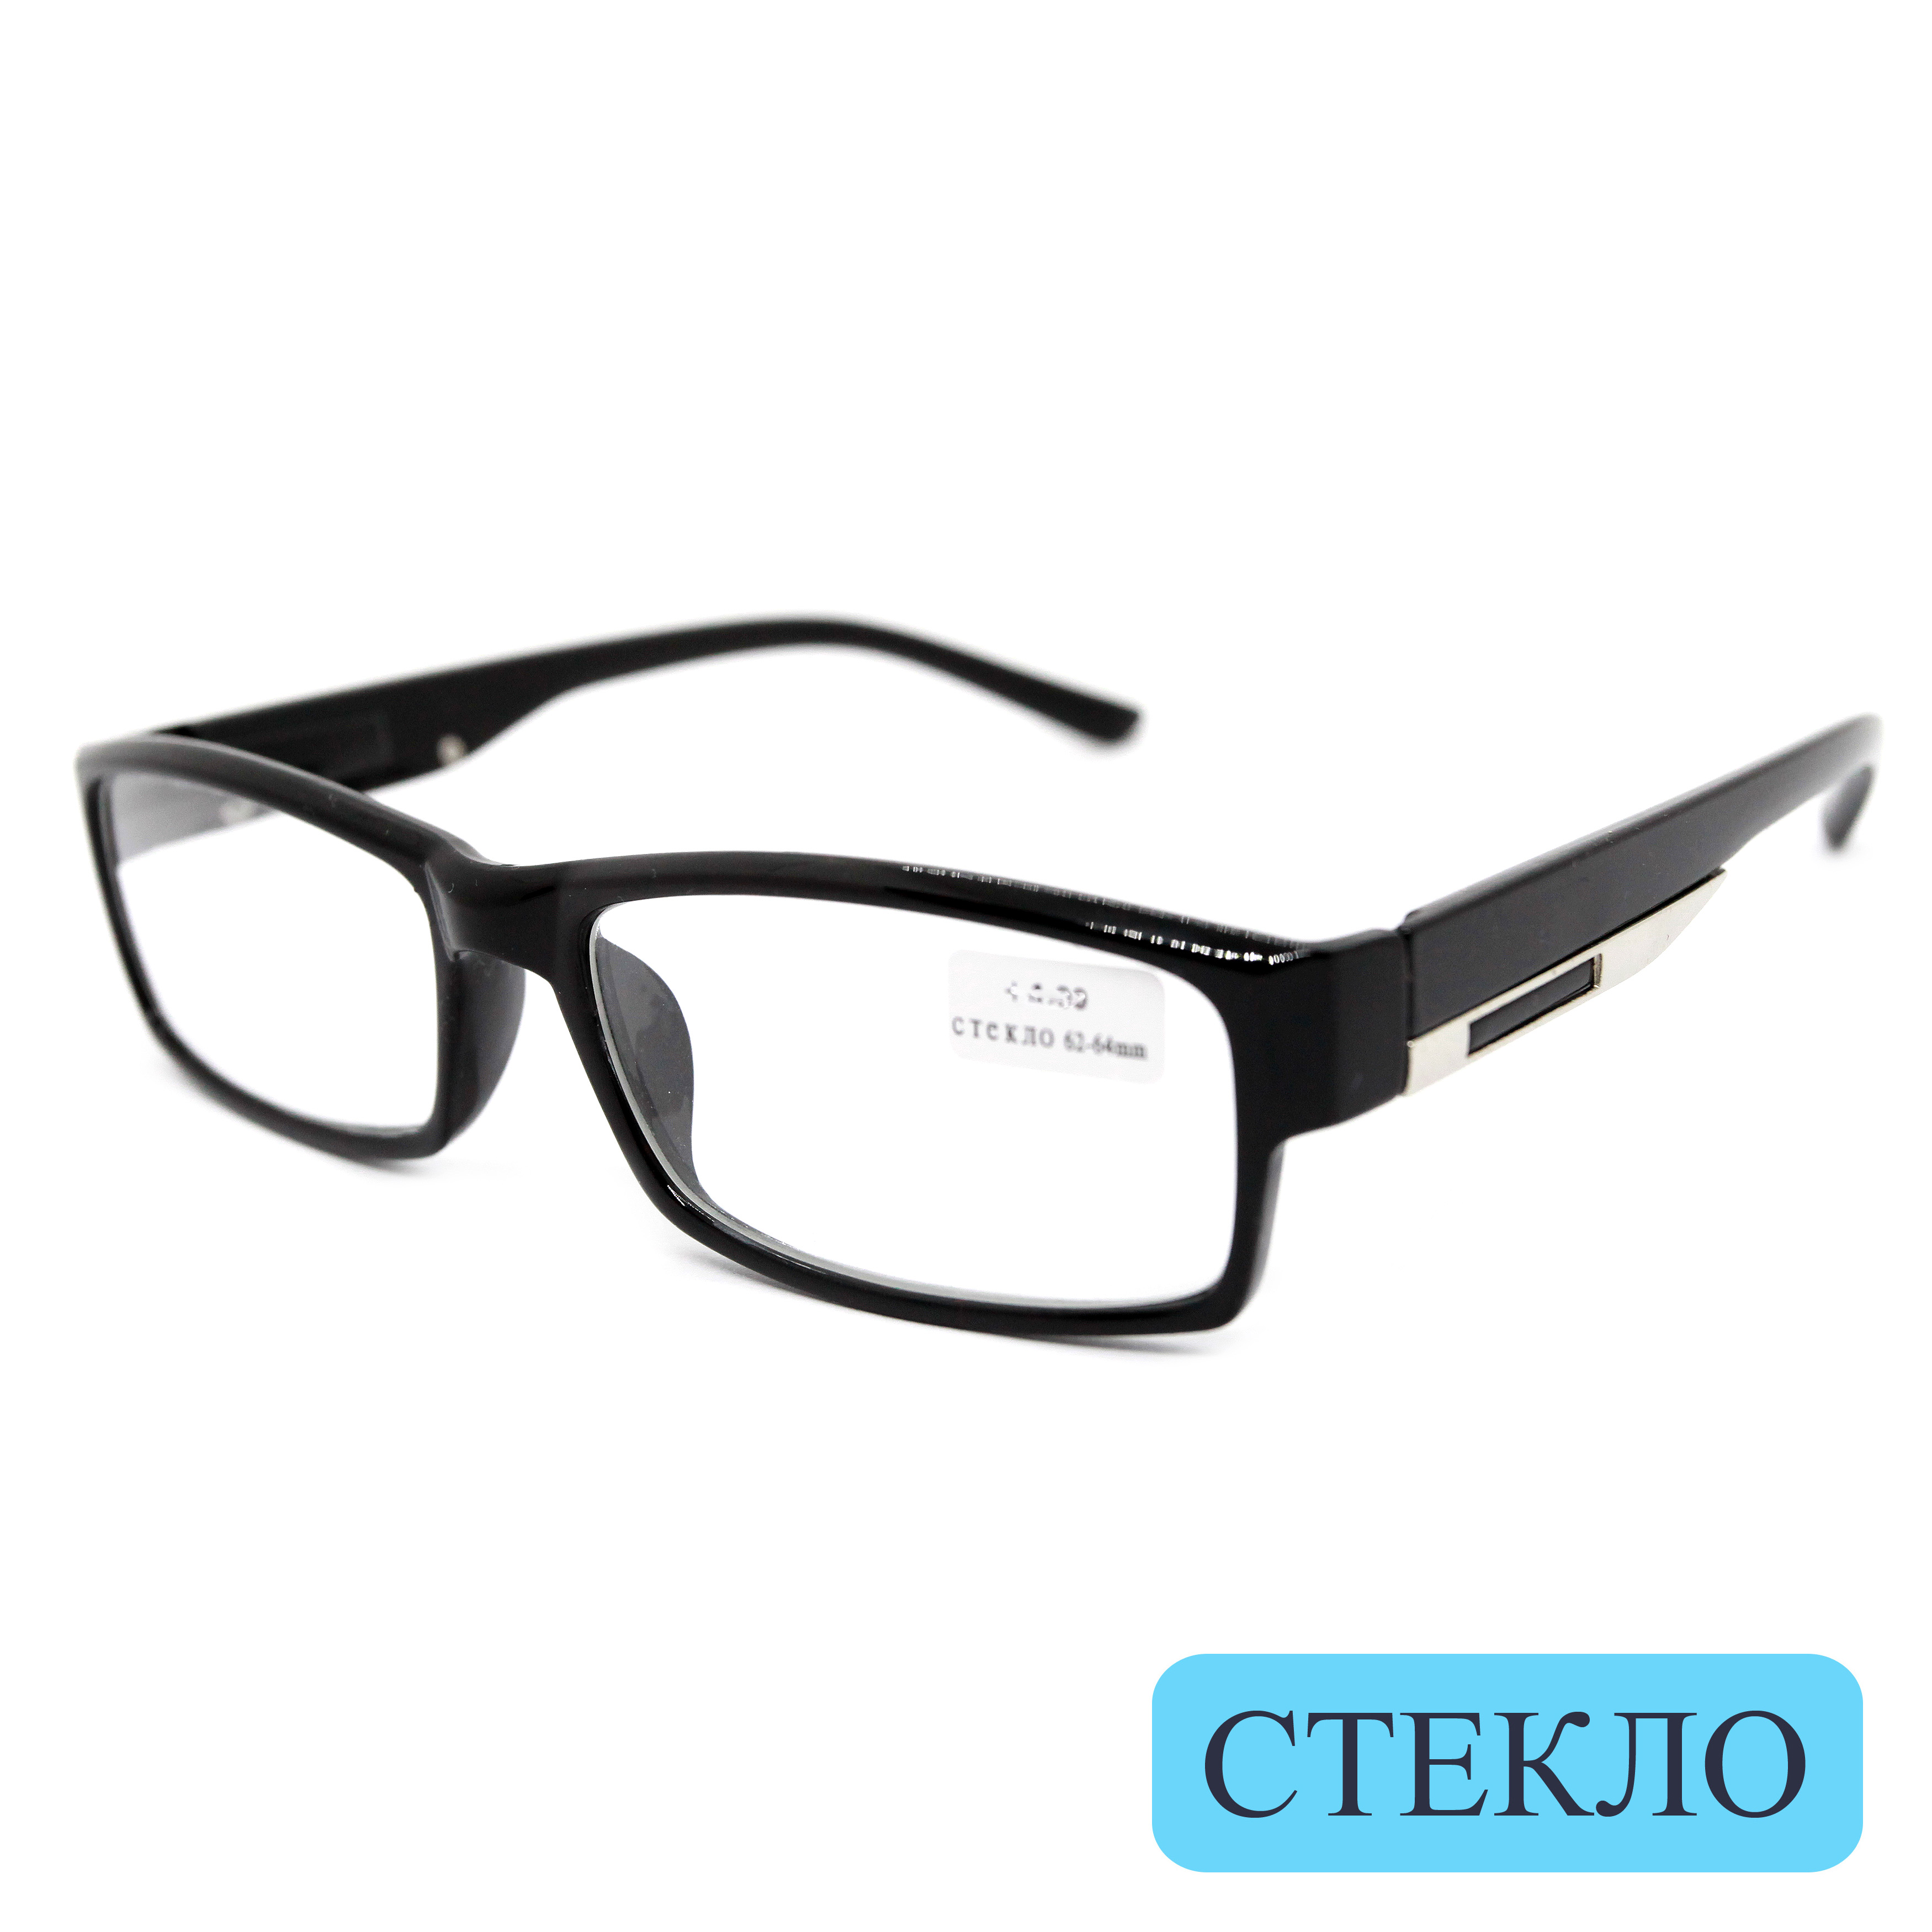 Готовые очки ВОСТОК 6613, со стеклянной линзой, +2,25, без футляра, черные, РЦ 62-64